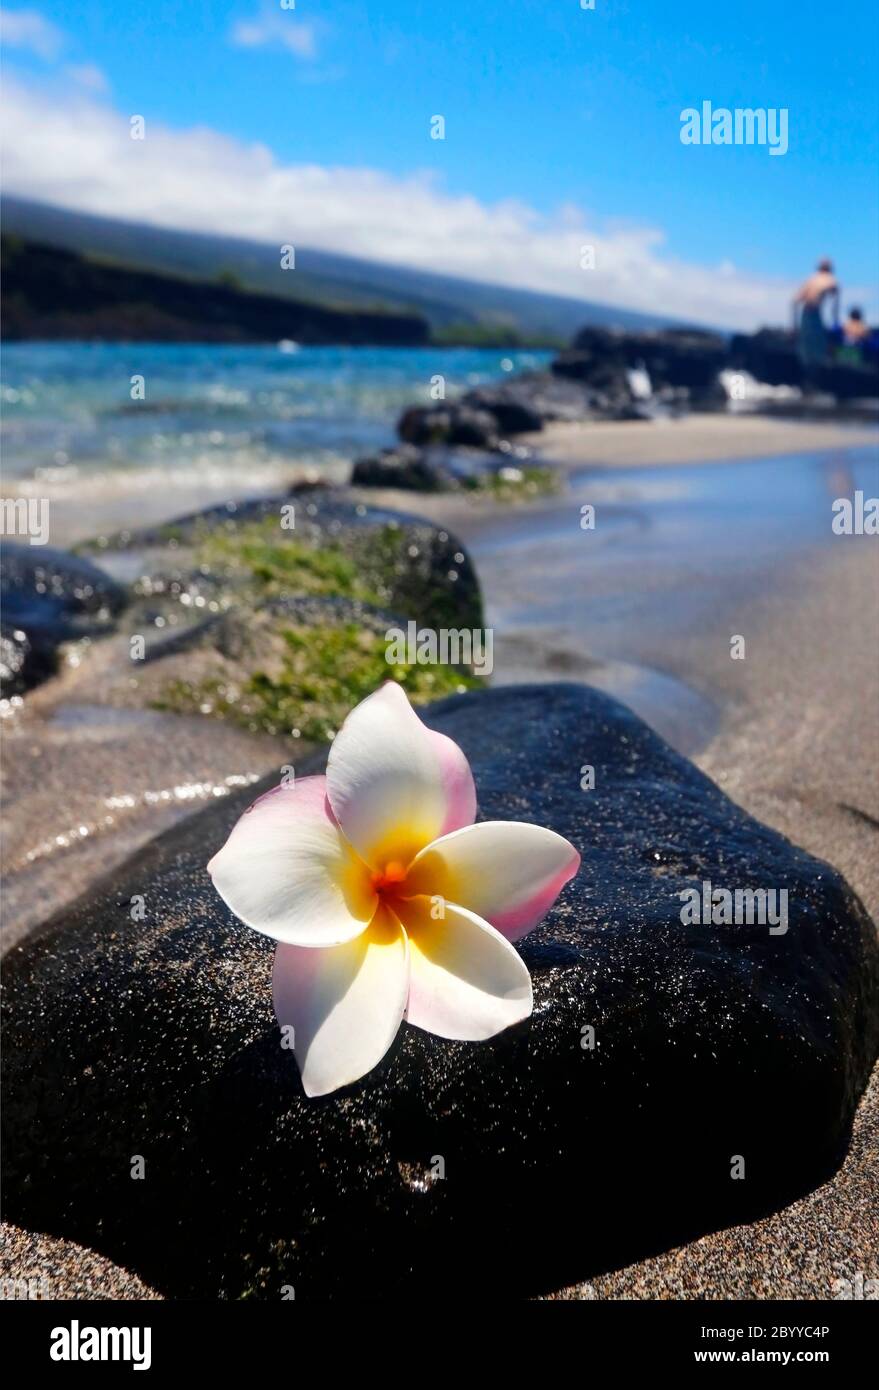 Vista panorámica con flores frangipani blancas en la piedra de lava negra en la playa del océano pacífico en una profundidad de campo poco profunda. Hawaii Big Island, Estados Unidos. Foto de stock